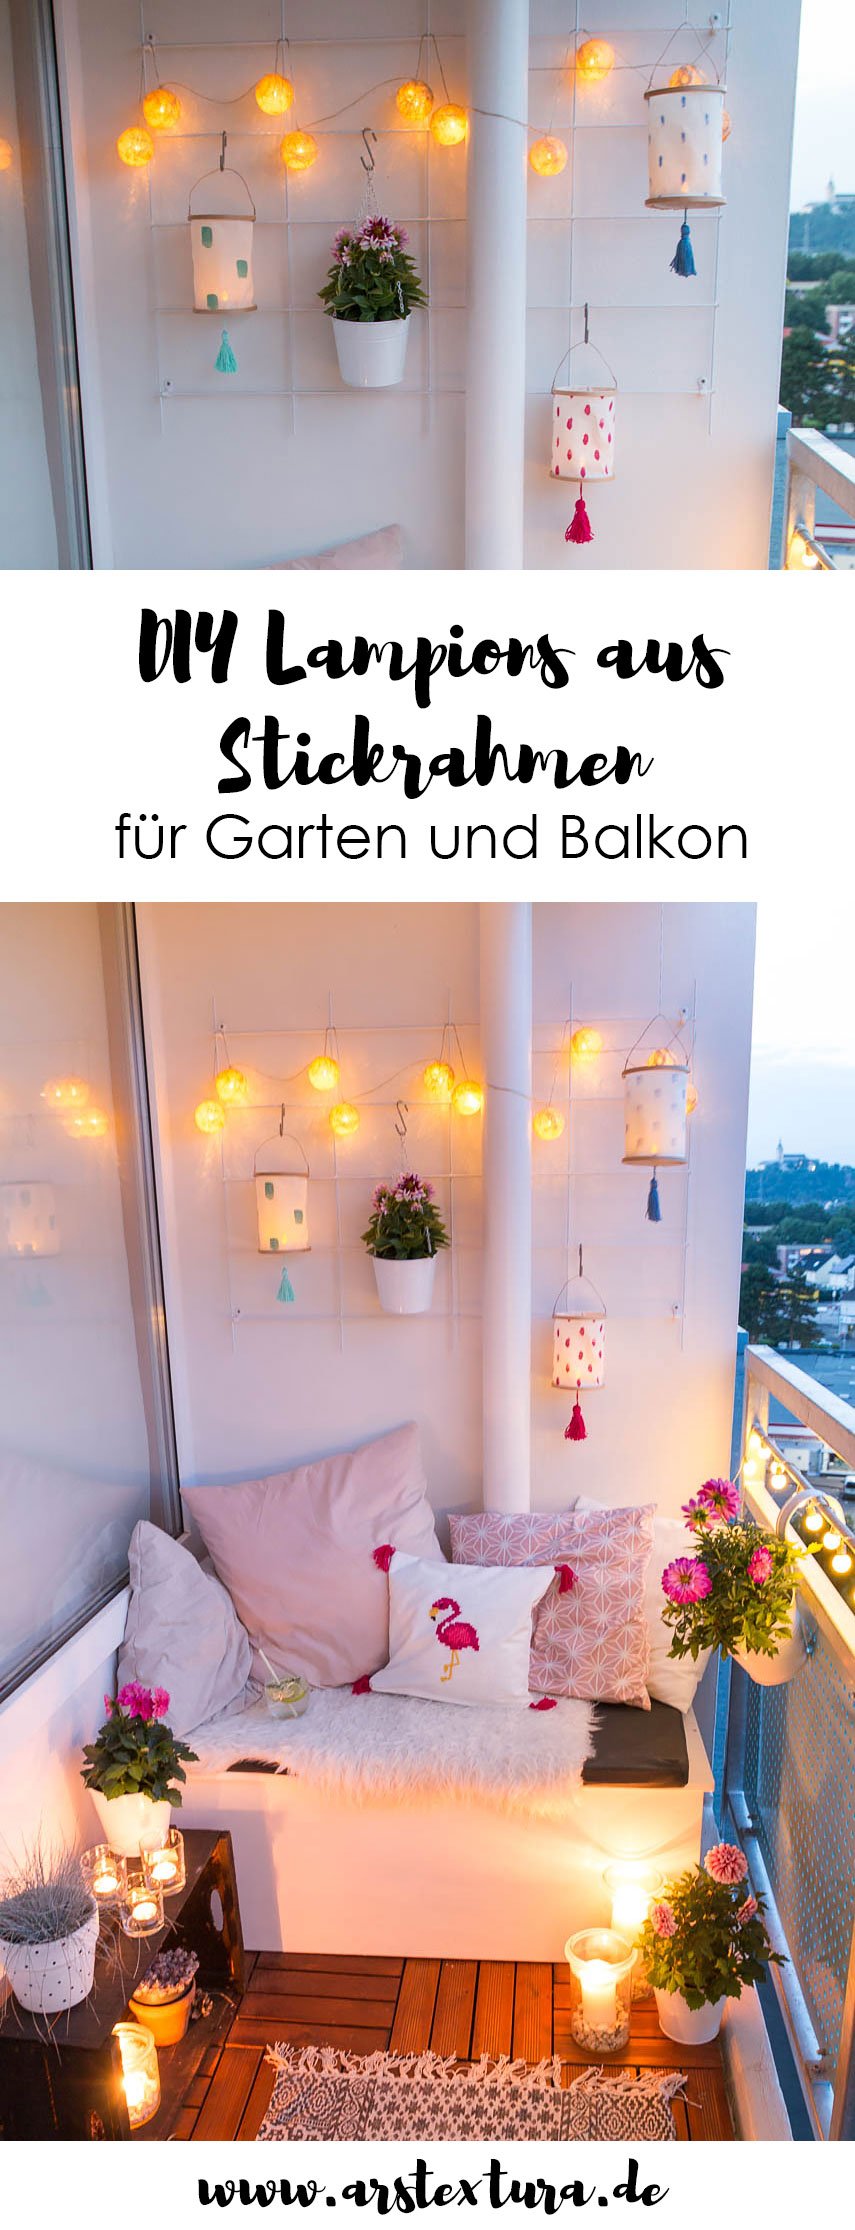 DIY Lampions aus Stickrahmen basteln - ideal für Balkon und Garten